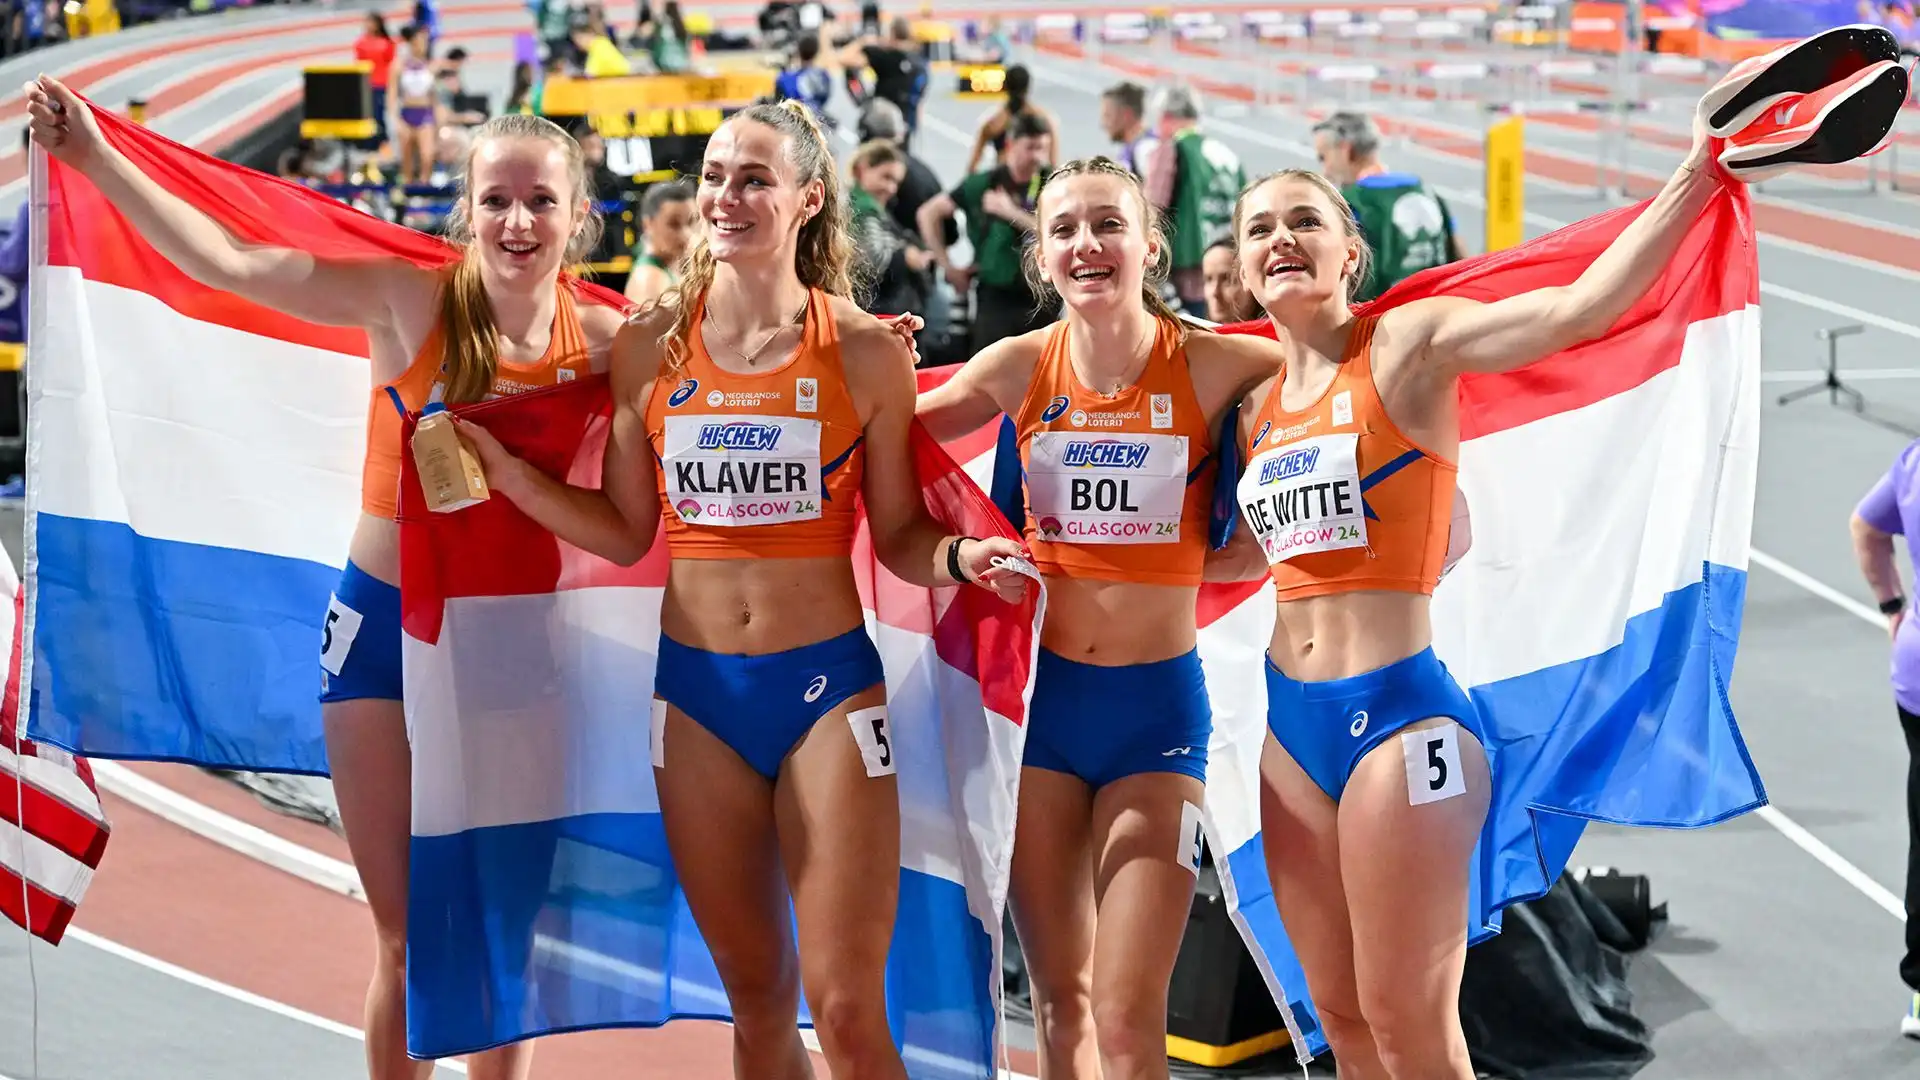 Femke Bol e Lieke Klaver avevano in precedenza dominato i 400 metri, conquistando rispettivamente l'oro e l'argento